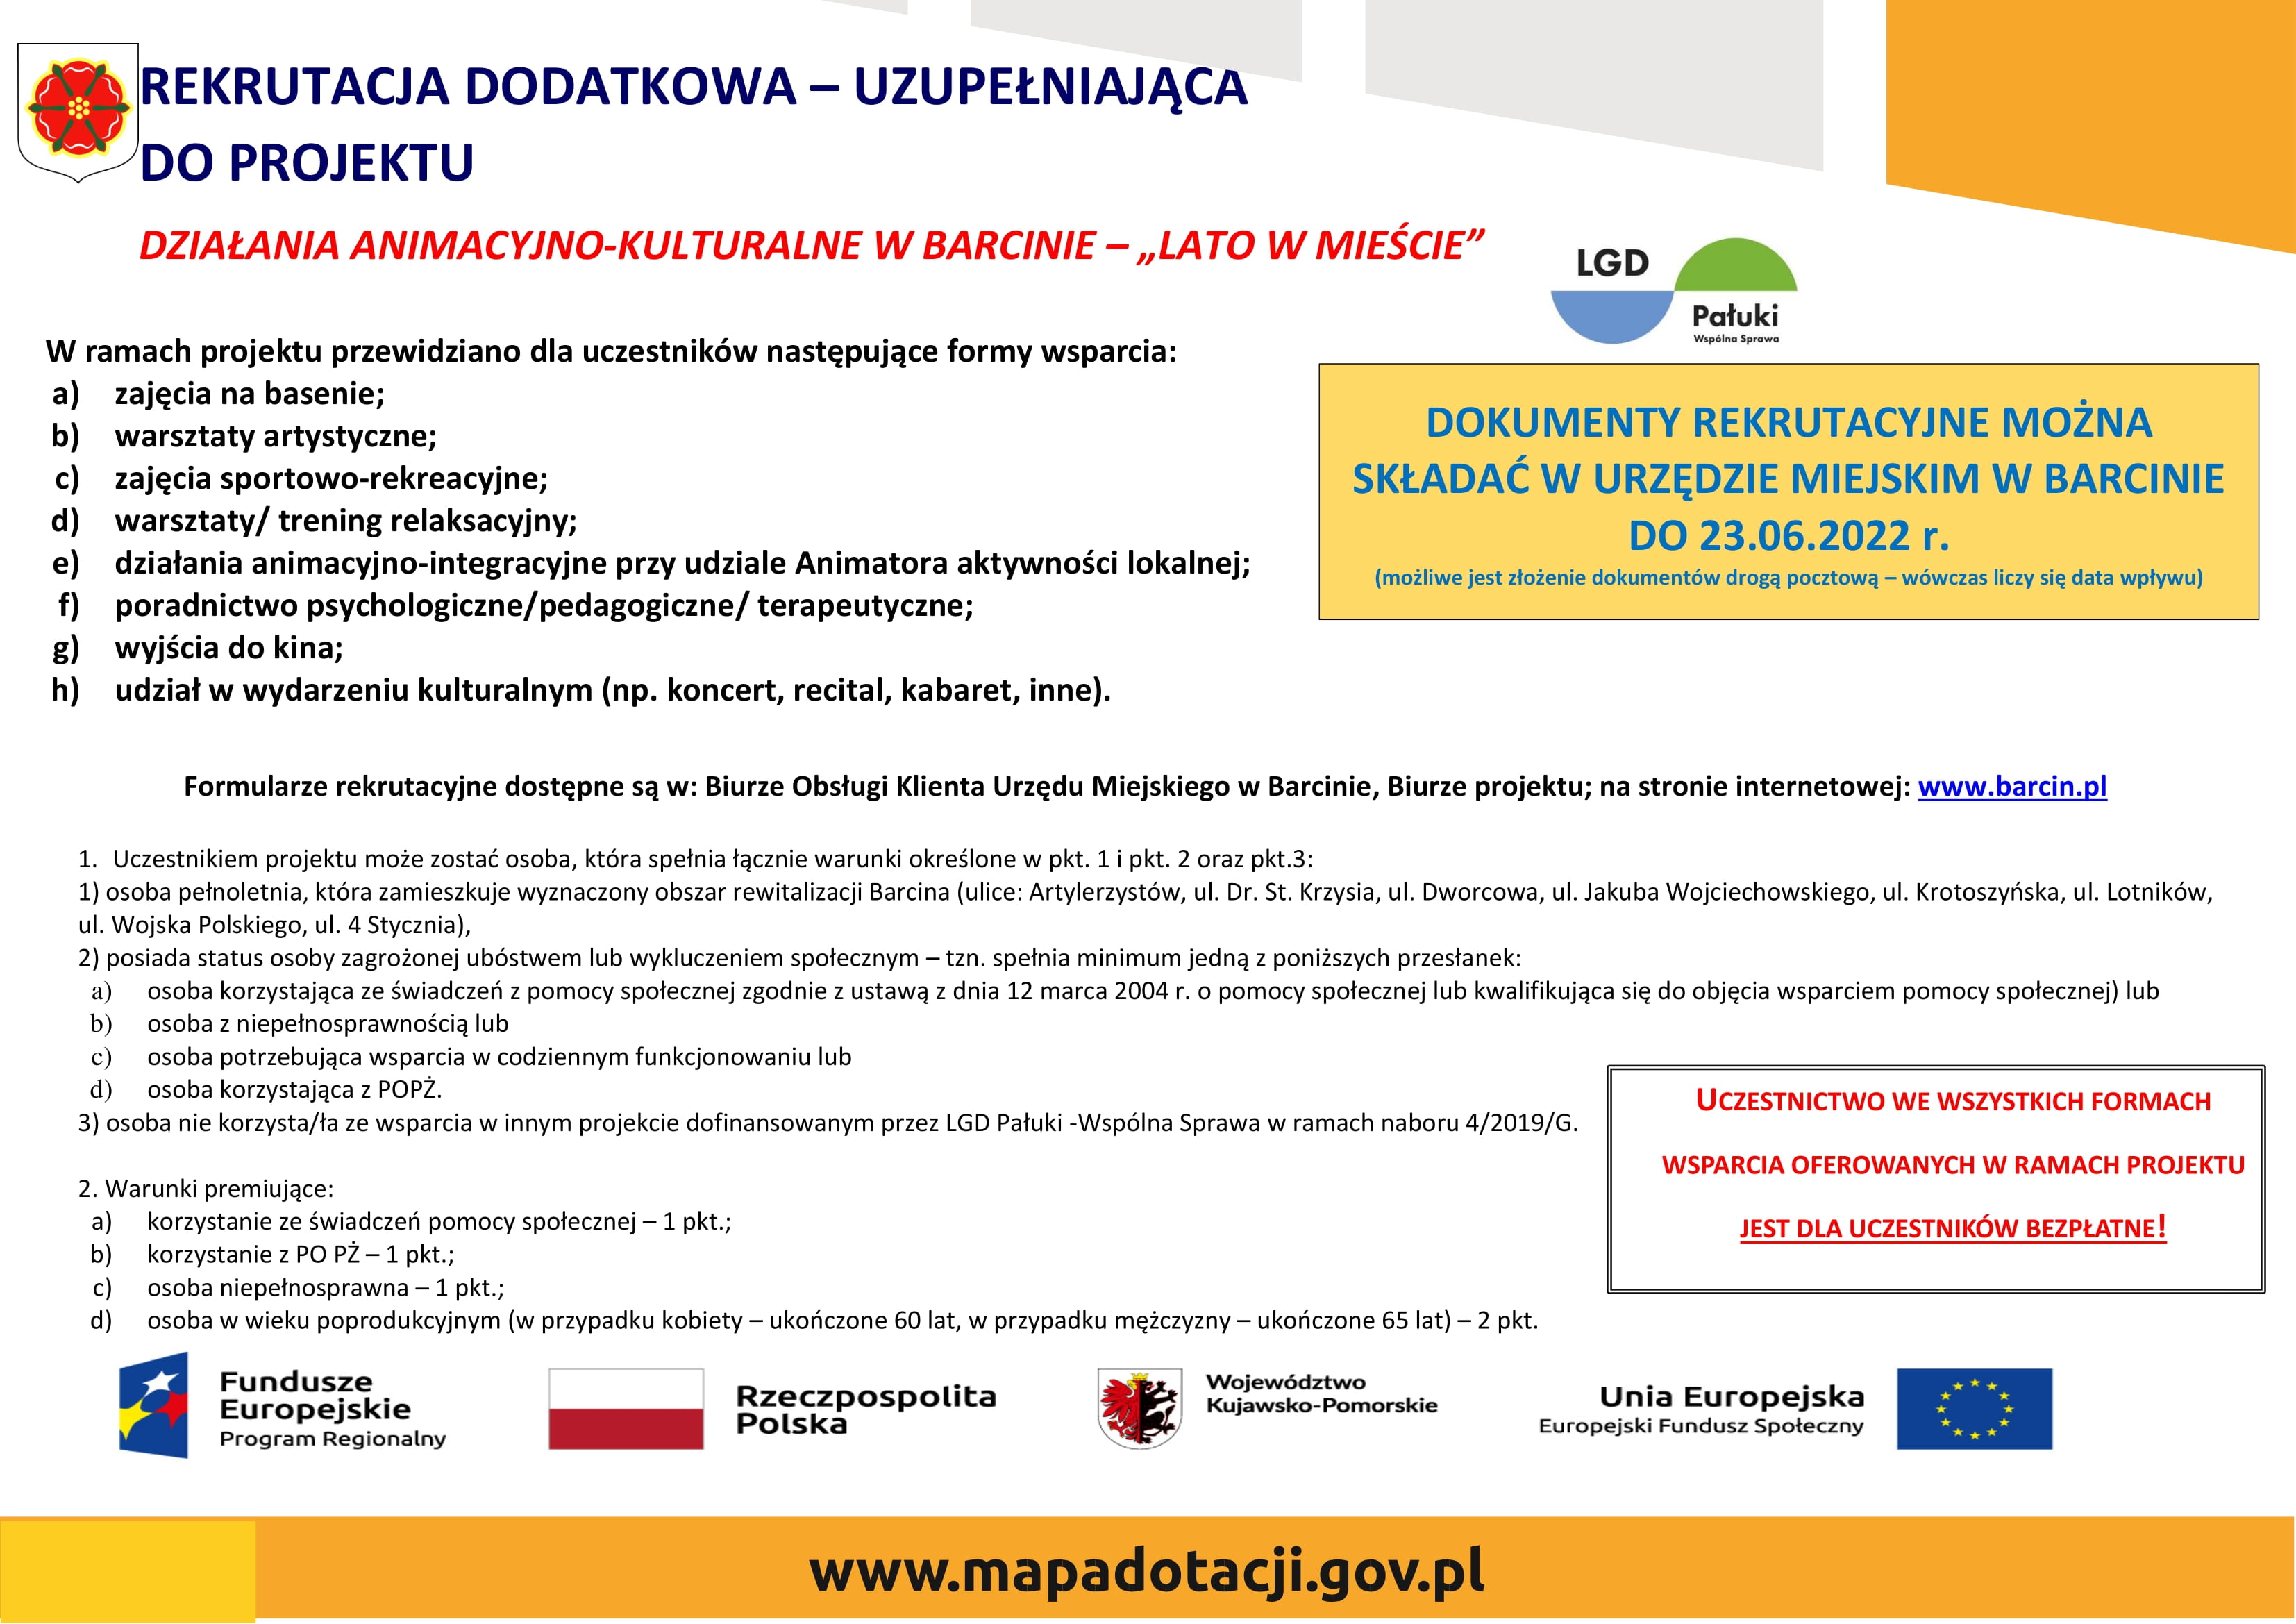 Plakat promujący rekrutację uzupełniającą do projektu „Działania animacyjno-kulturalne w Barcinie – „LATO W MIEŚCIE”